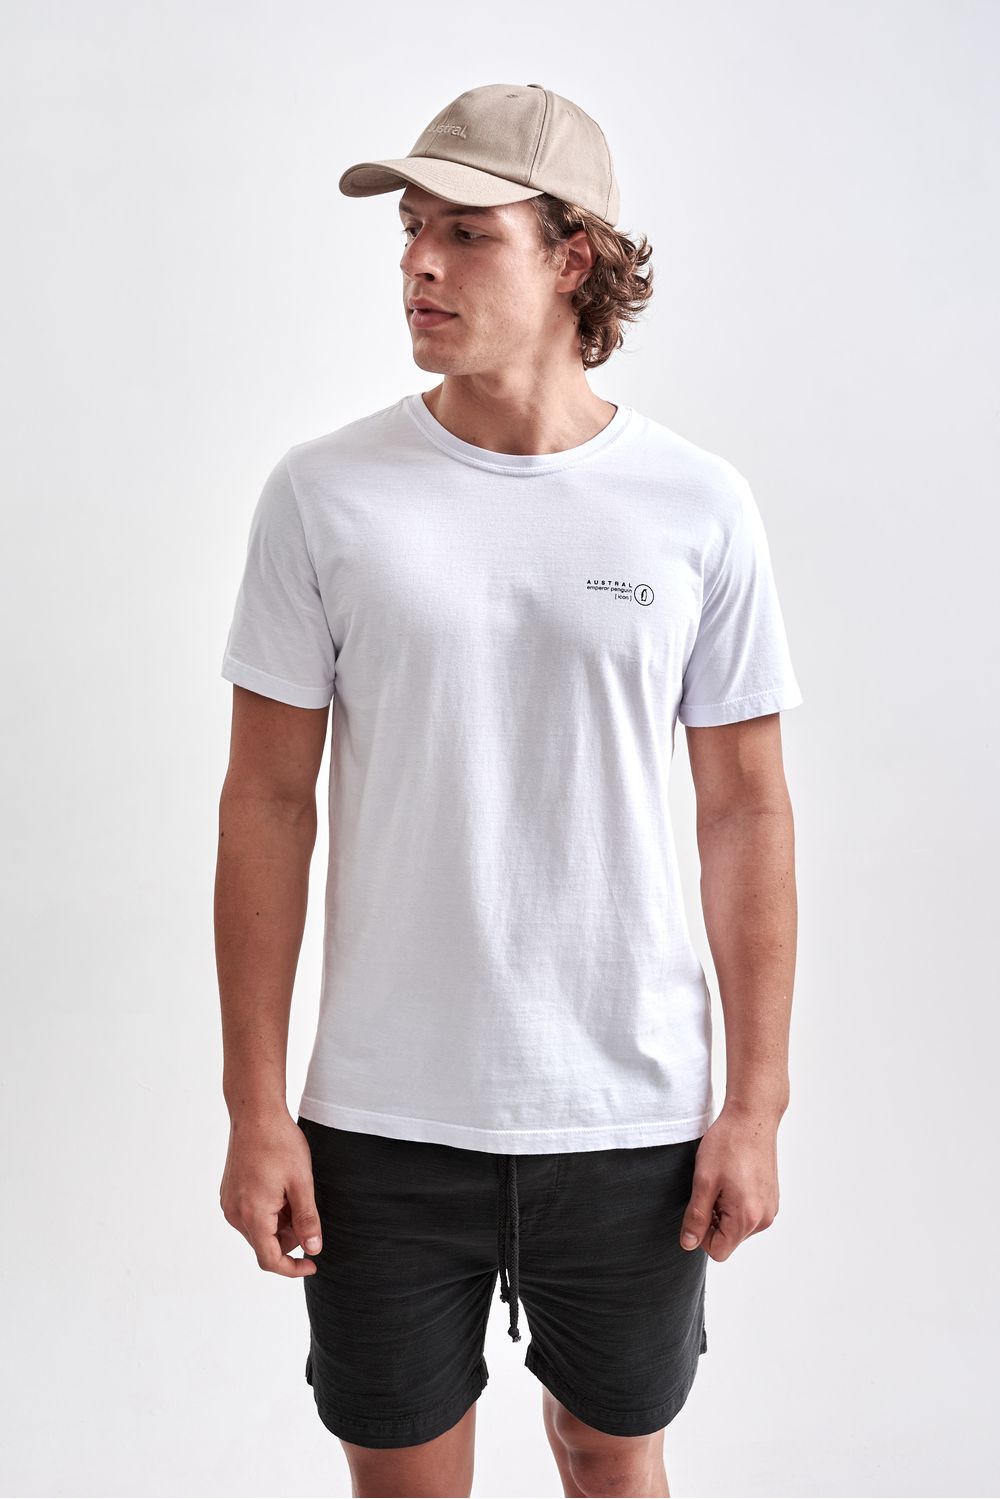 AUSTRAL - Camiseta Penguin Society Branco